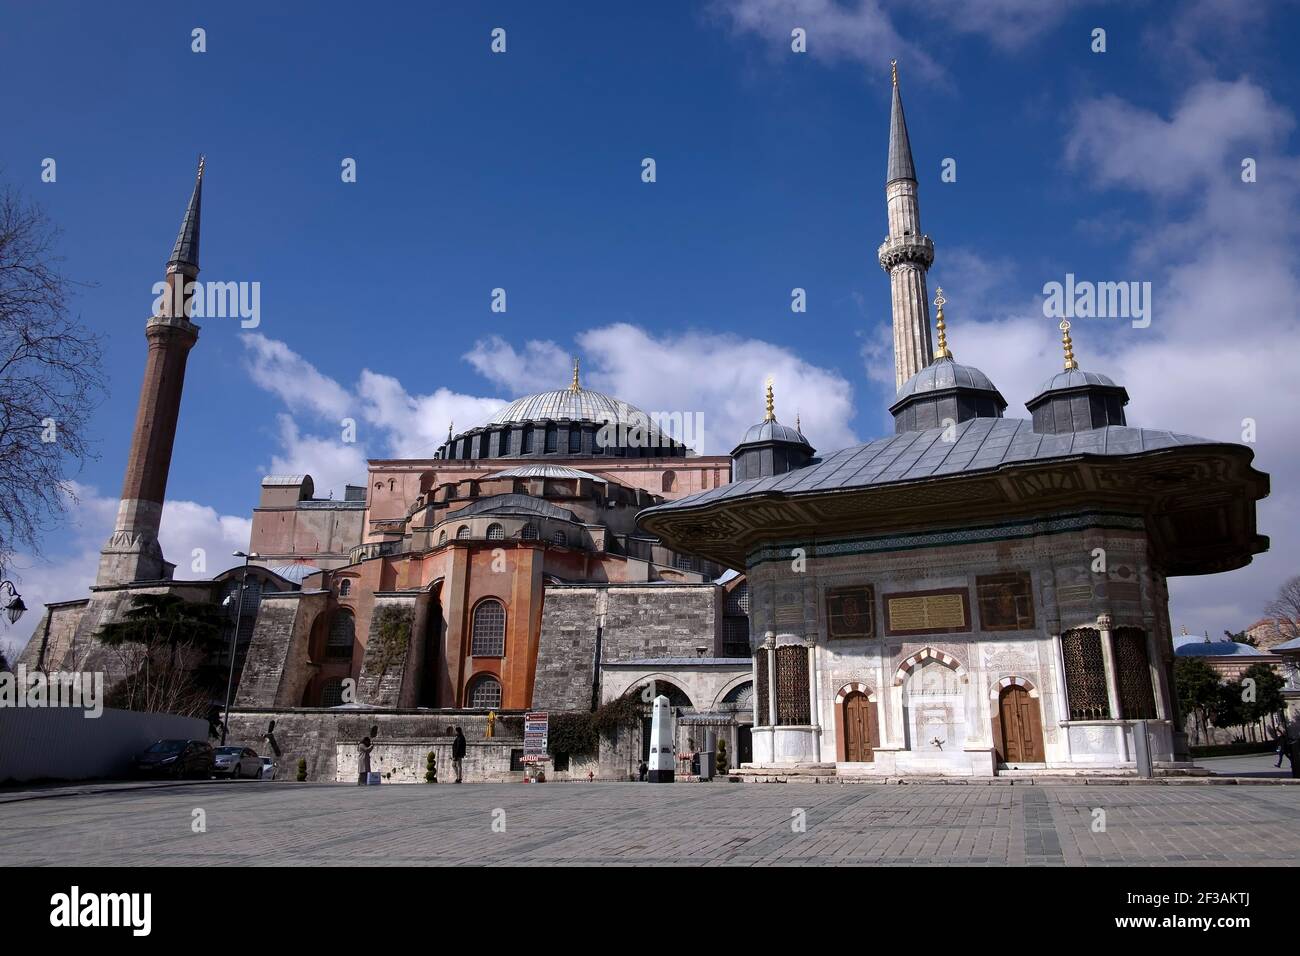 Vista panoramica di Hagia Sophia, basilica patriarcale cristiana, moschea imperiale e ora un museo (Ayasofya in turco) e Fontana del Sultano Ahmed III Foto Stock